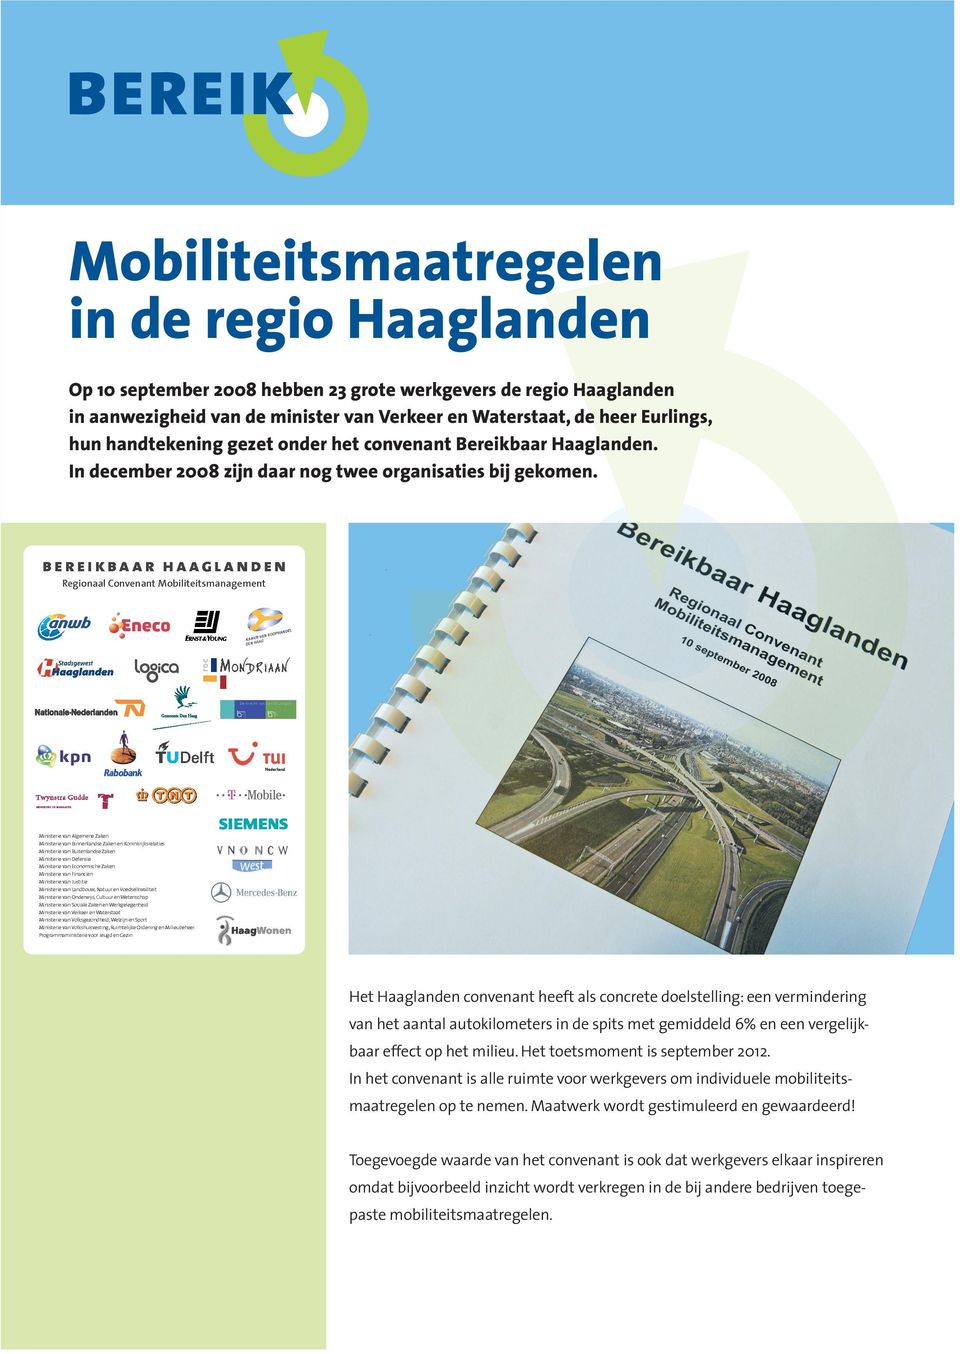 Het Haaglanden convenant heeft als concrete doelstelling: een vermindering van het aantal autokilometers in de spits met gemiddeld 6% en een vergelijkbaar effect op het milieu.